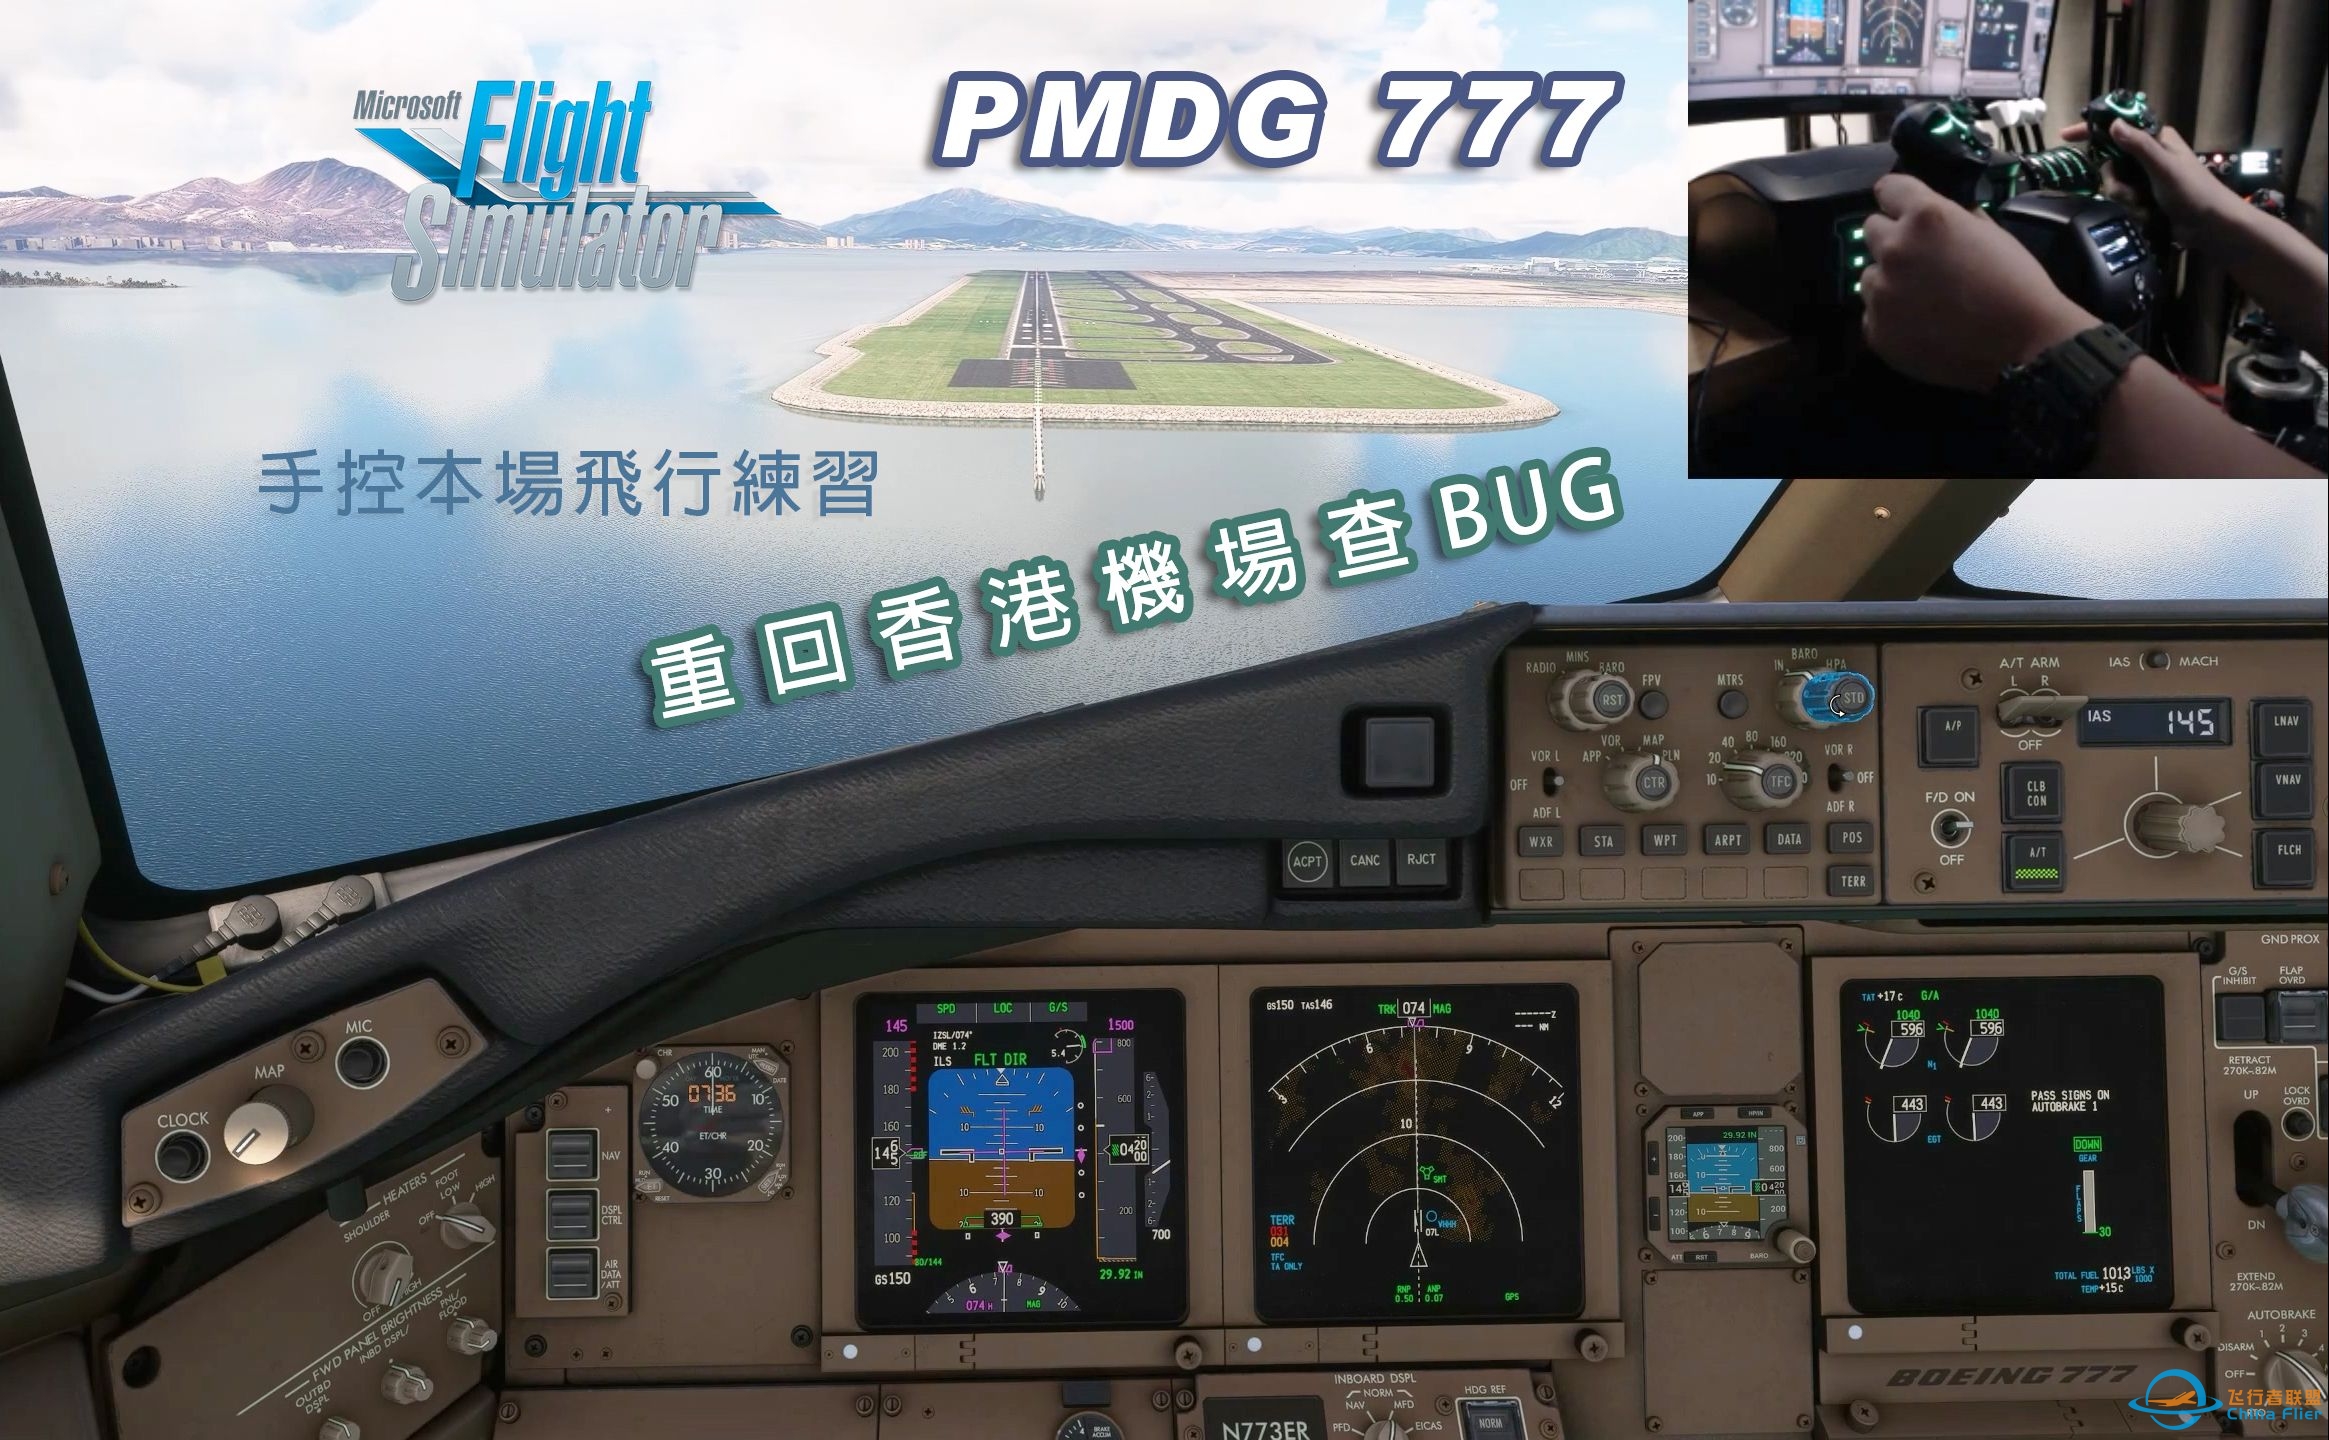 微软飞行模拟 PMDG 777 手控本场飞行练习 (驾驭 Fly-By-Wire)-212 